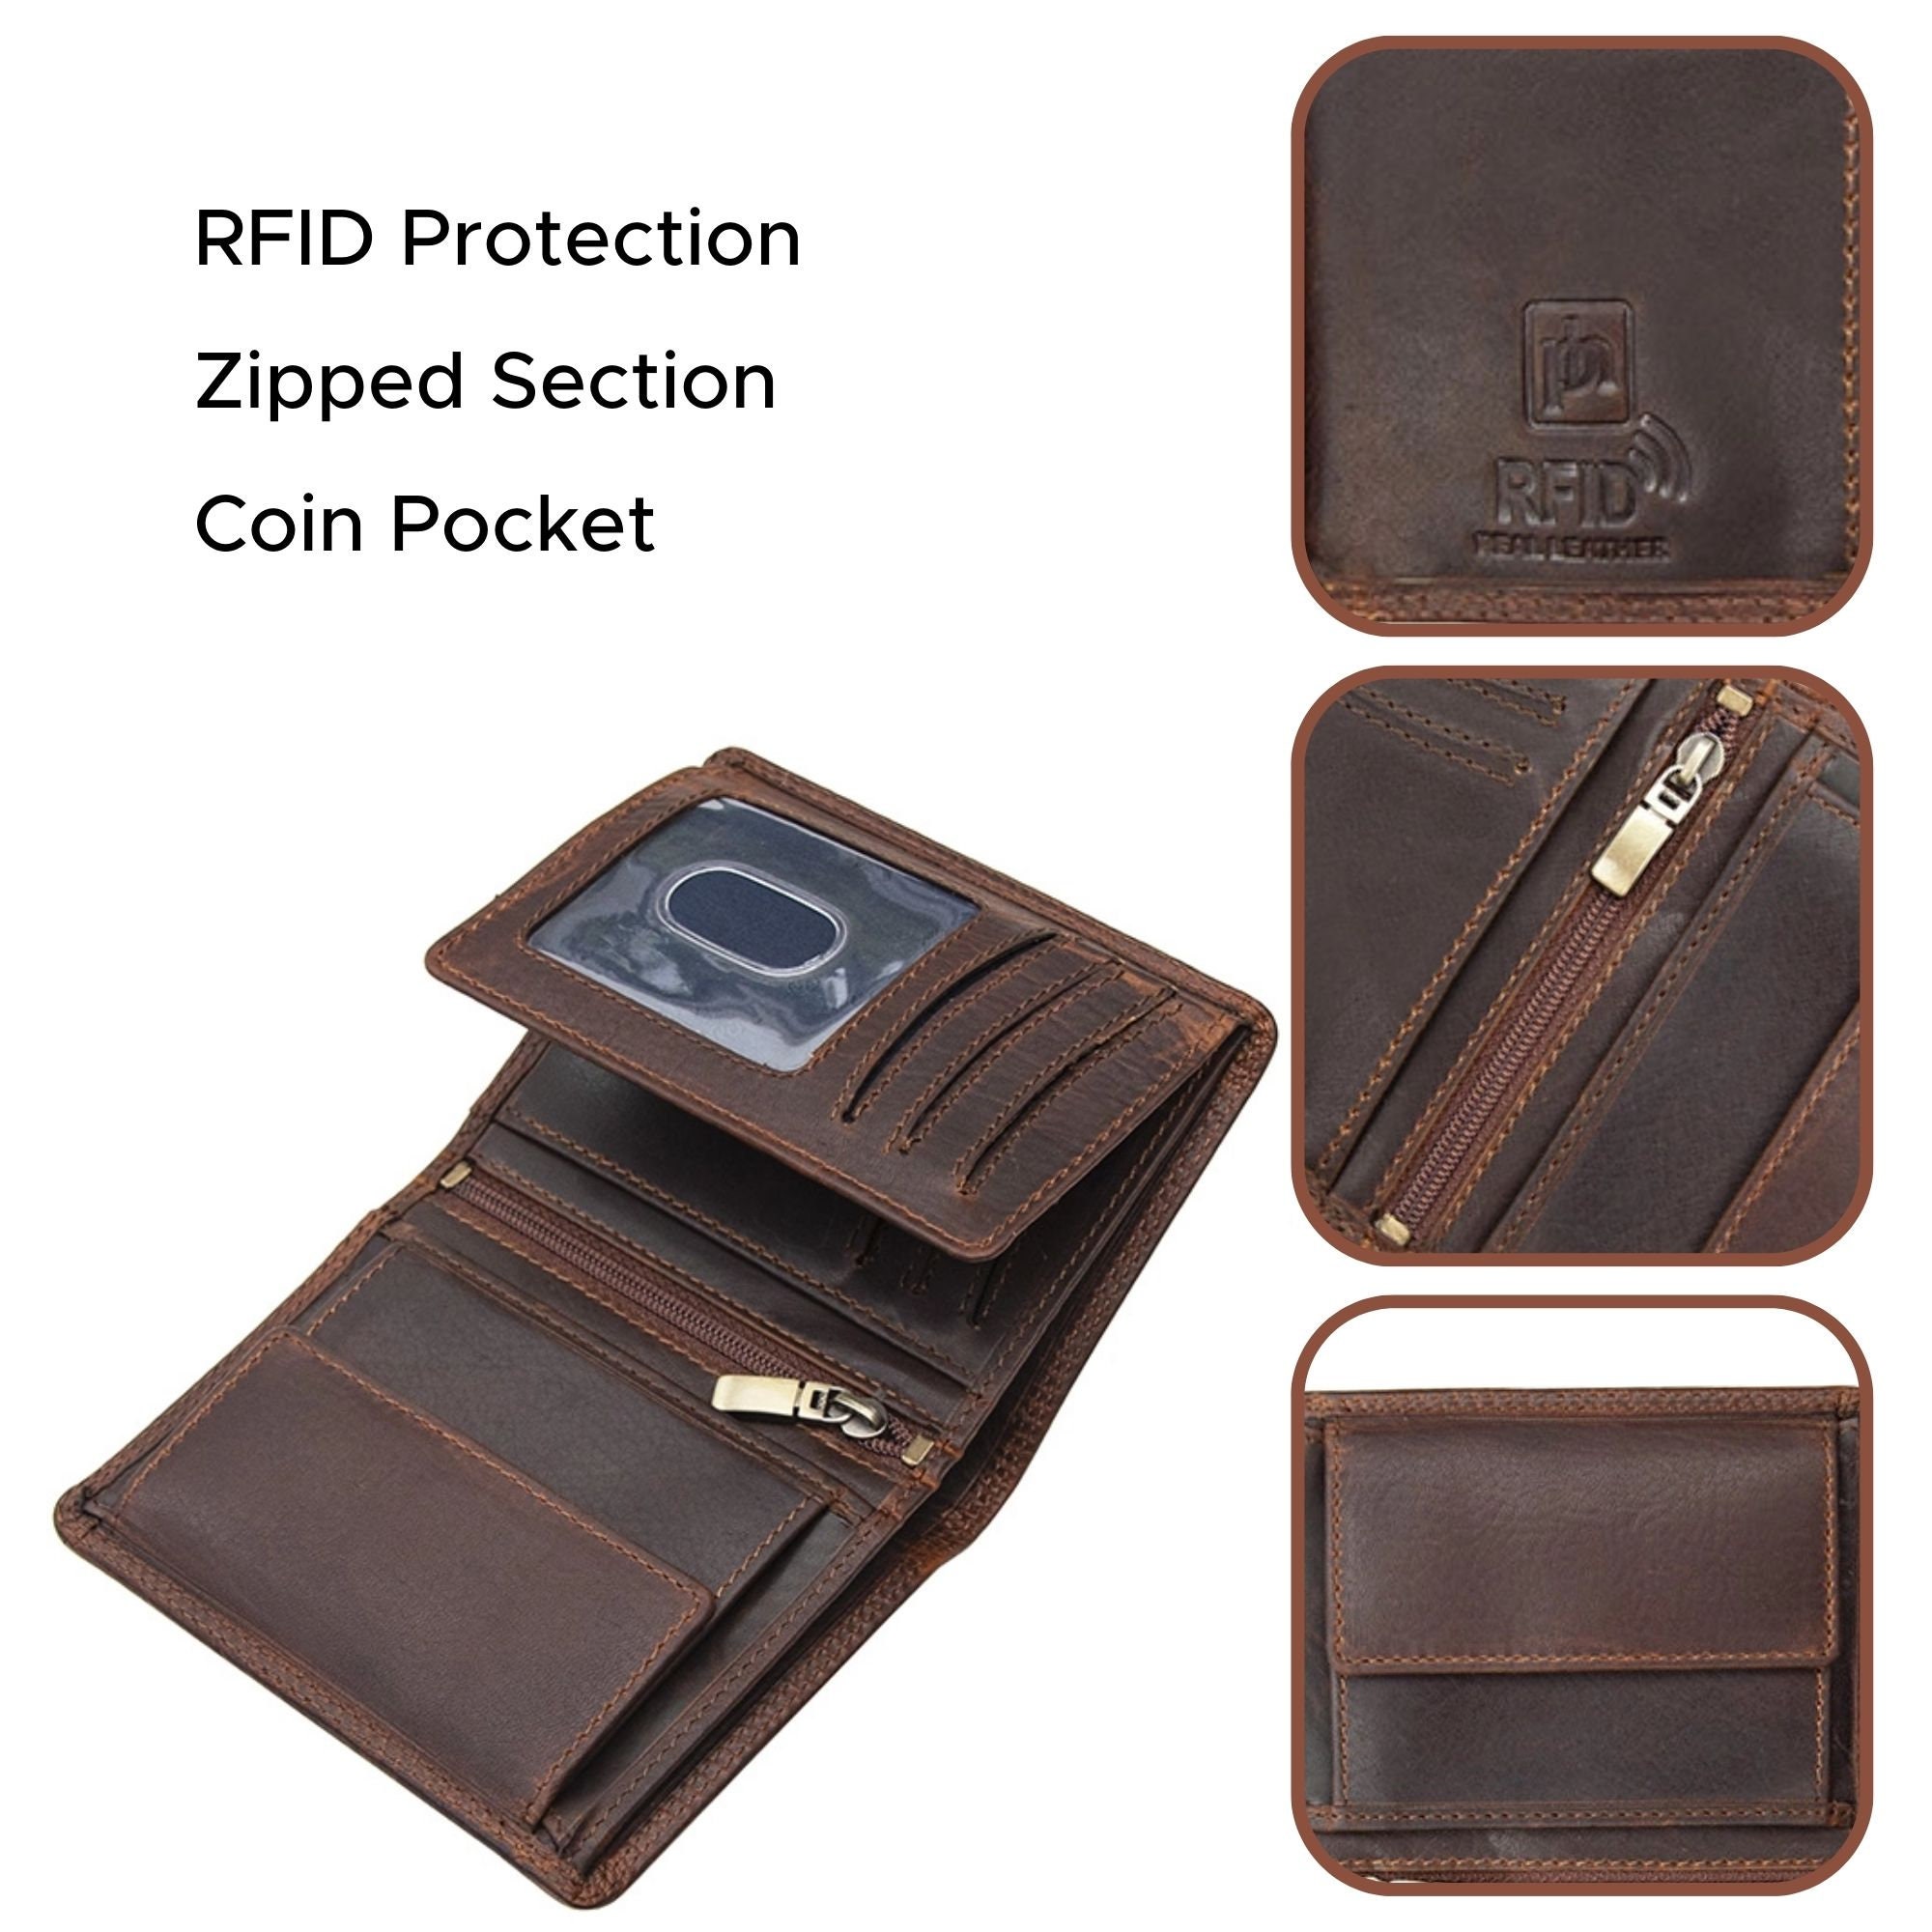 Genuine Leather Wallet For Men Rfid Blocking Vintage Slim Short